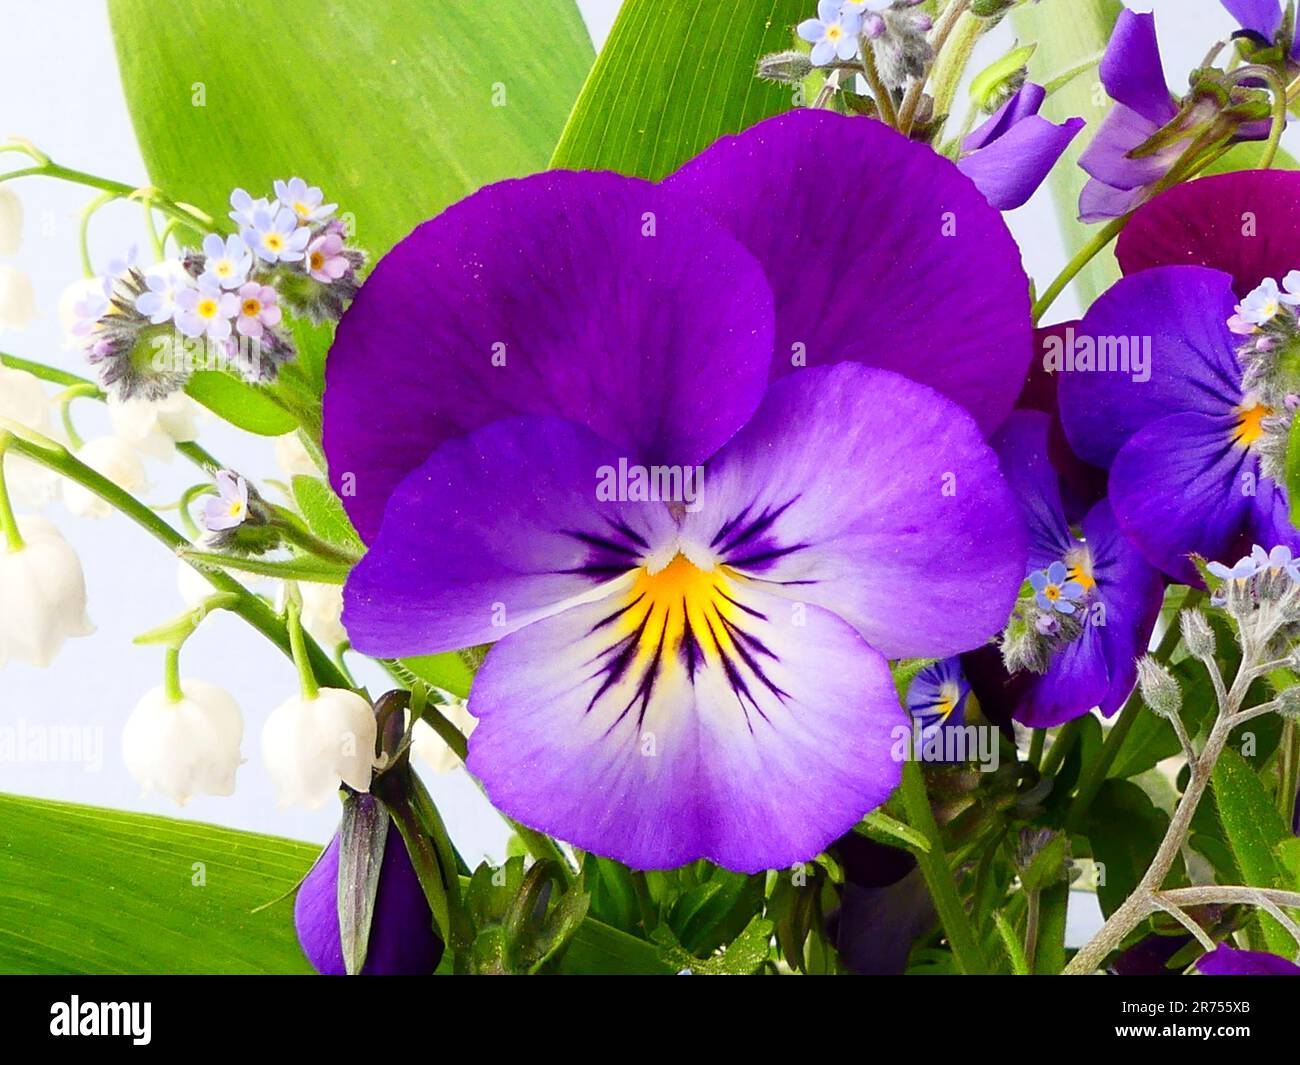 Bouquet de fleurs avec violettes Banque D'Images